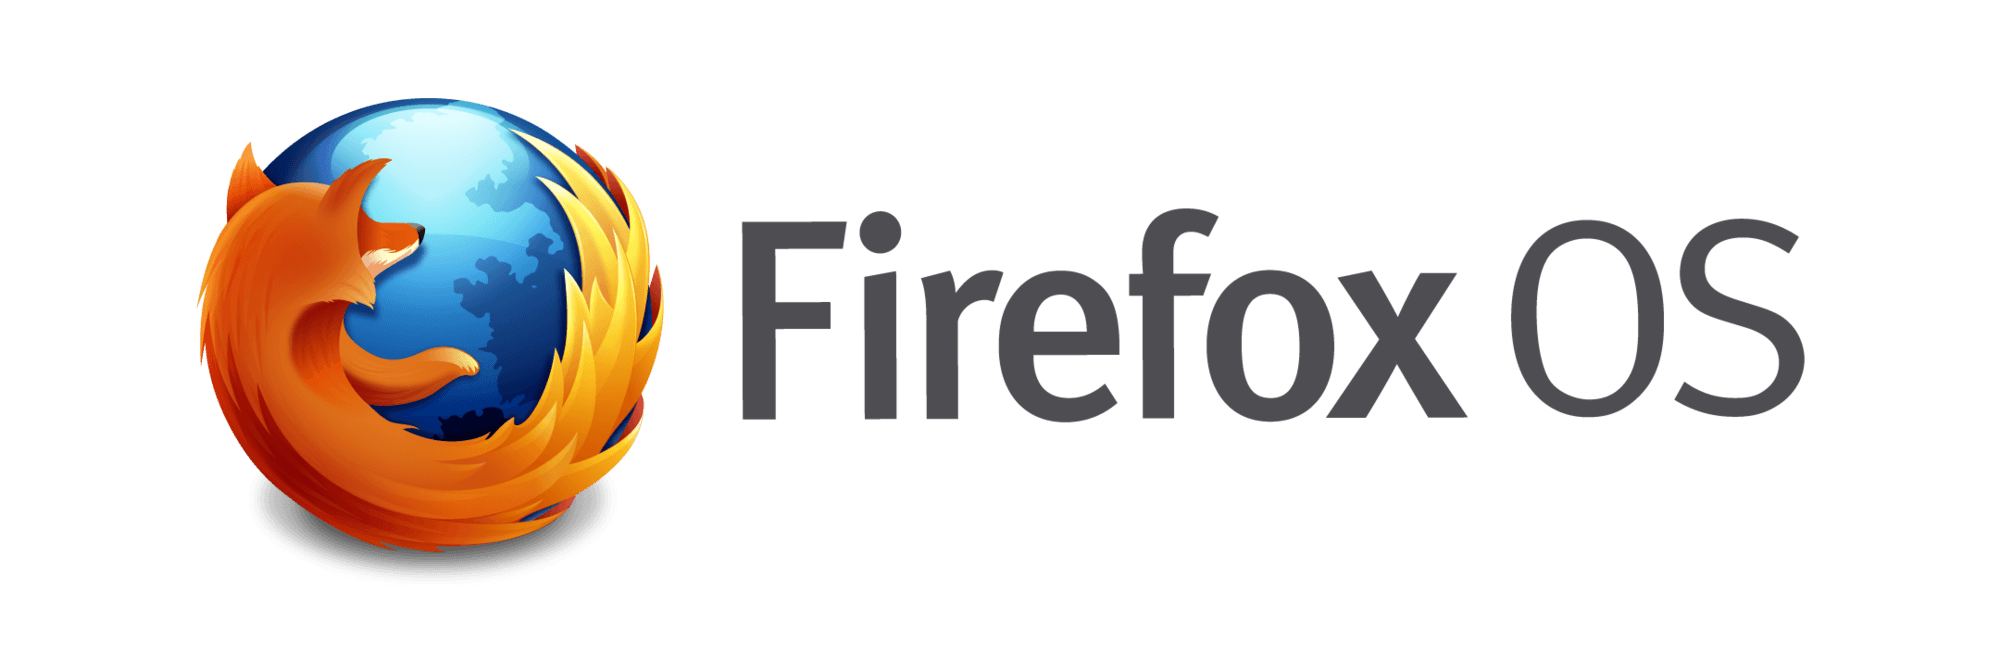 Firefox OS Logo - Firefox OS | Logopedia | FANDOM powered by Wikia